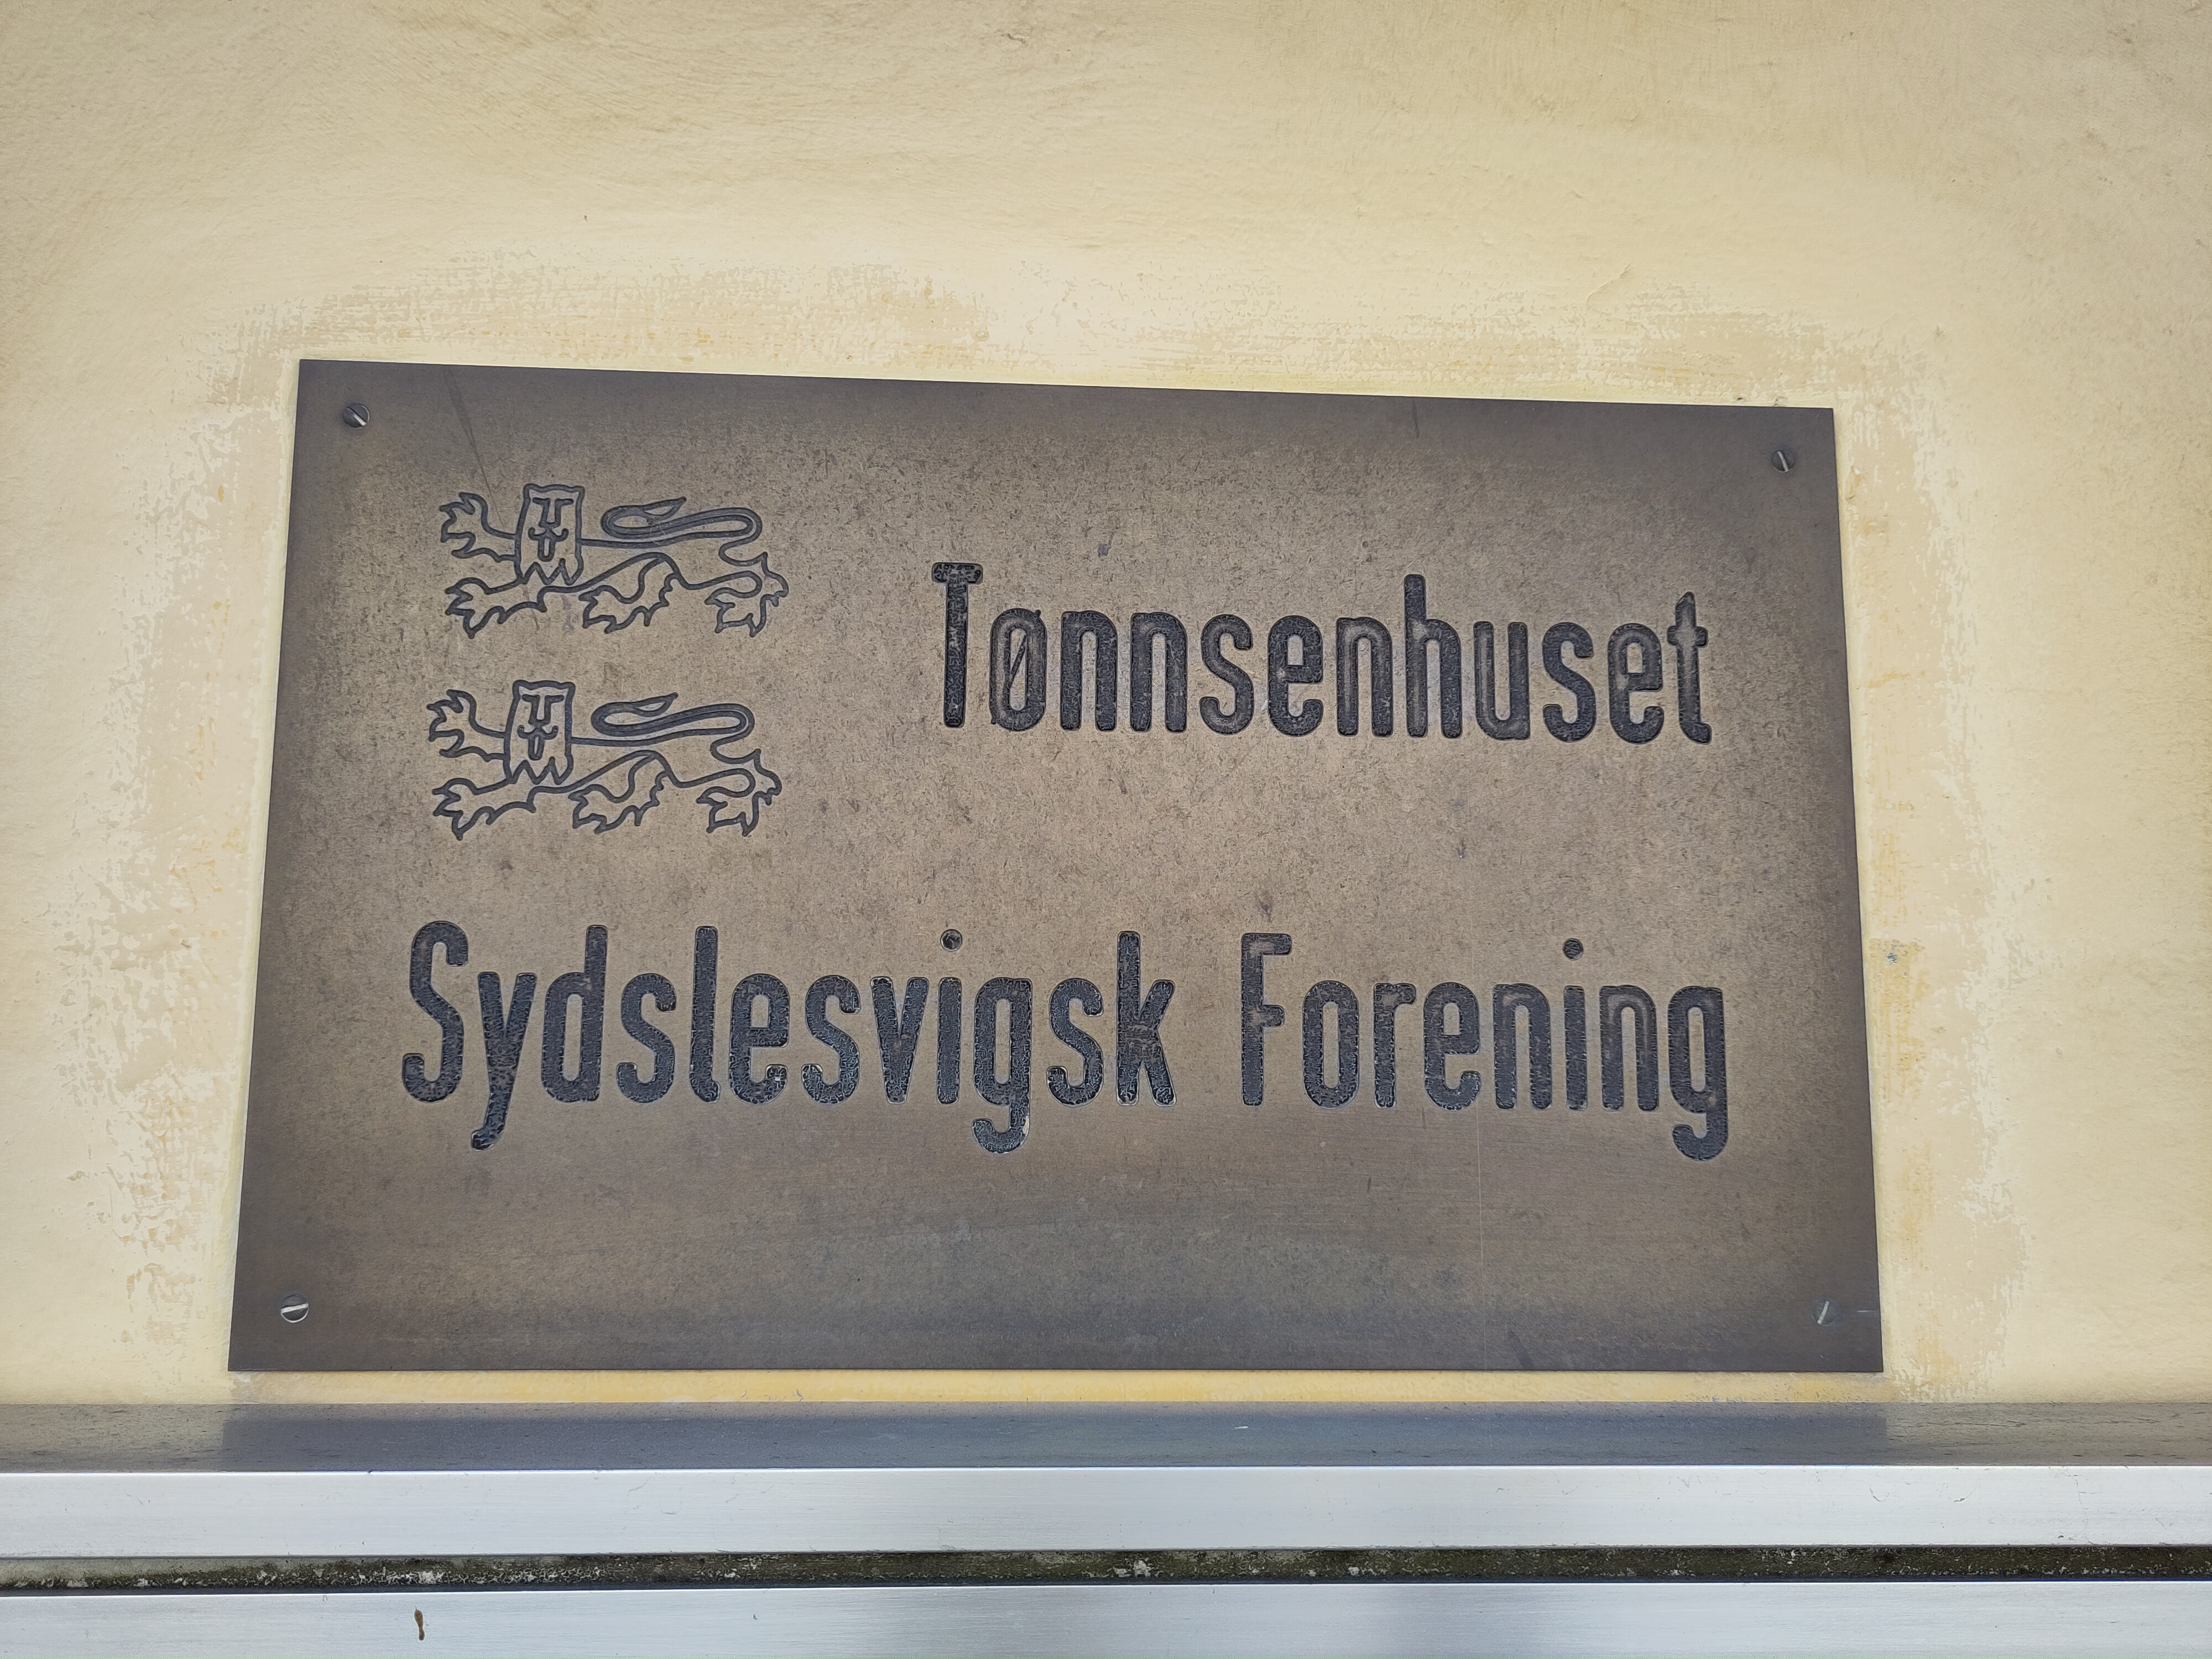 Tønnsethuset Sydelsvigsk Forening